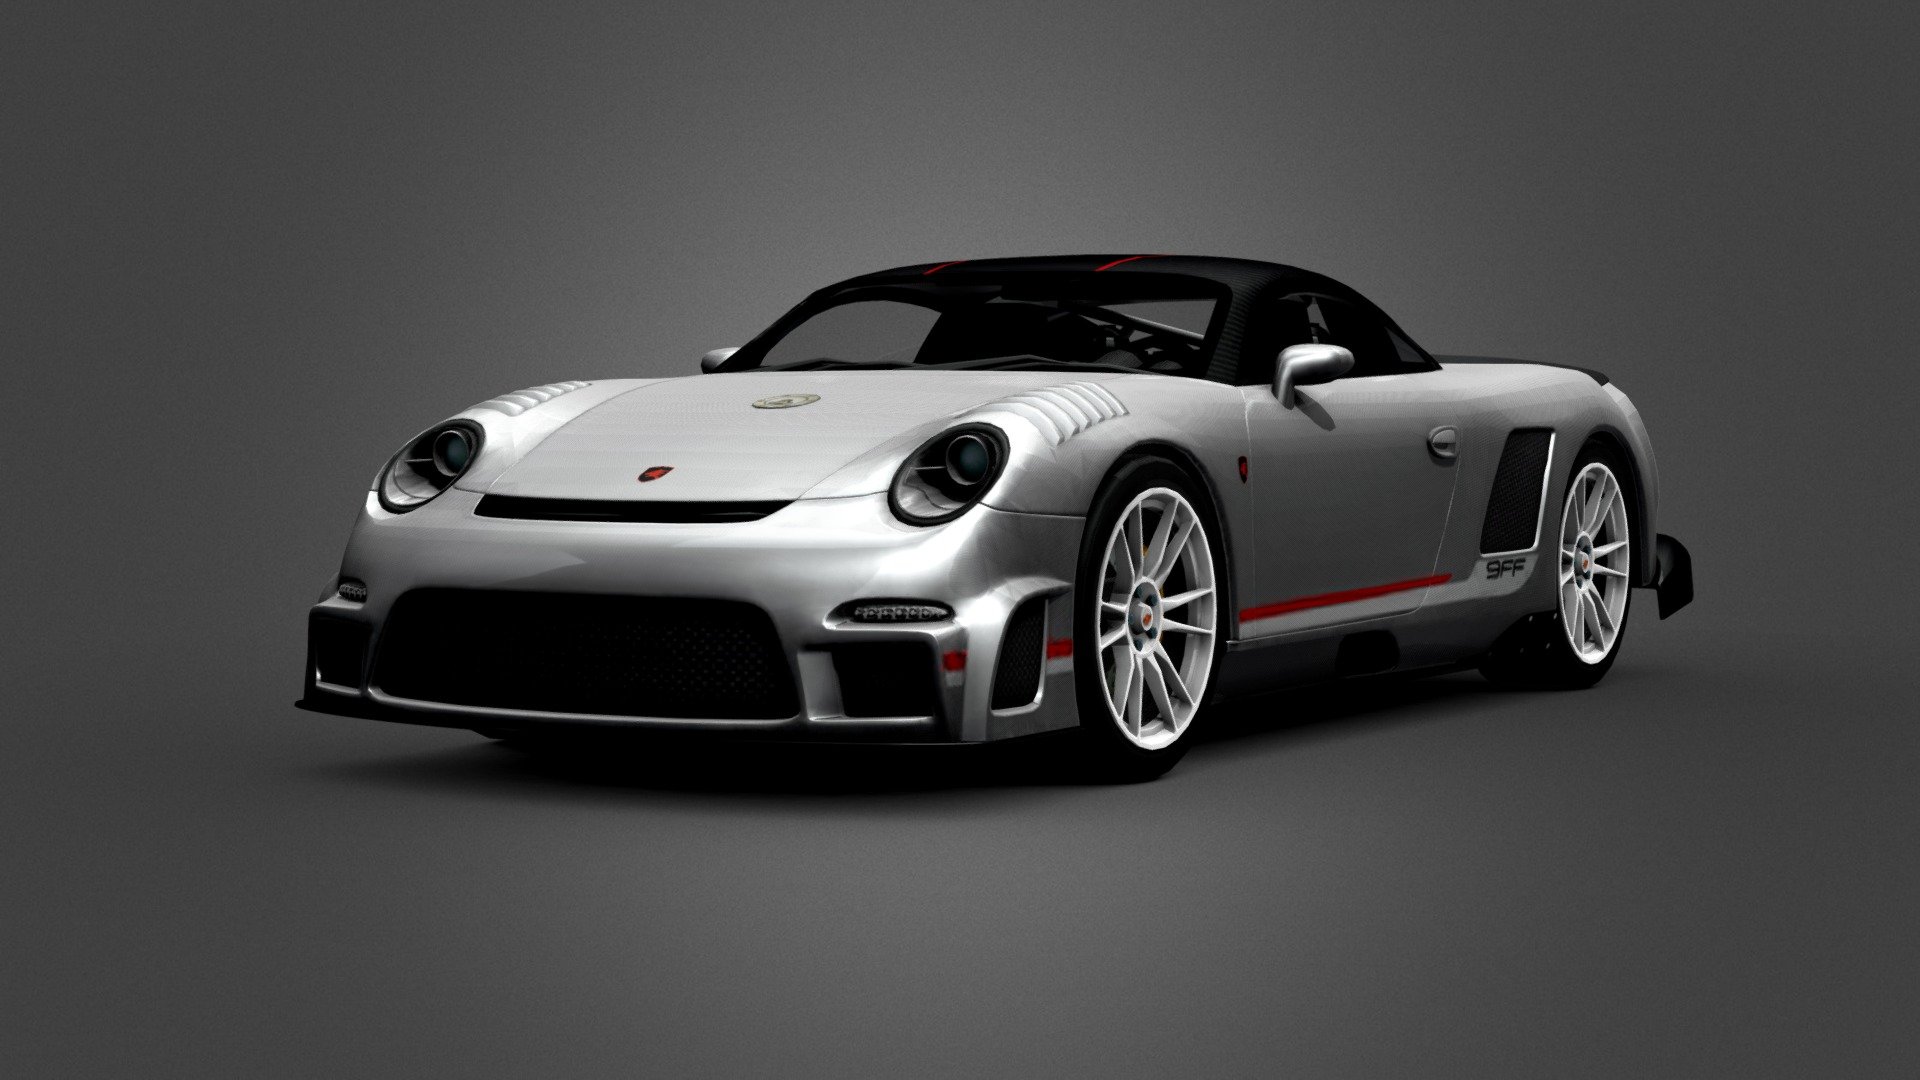 Porsche 9FF GT9 VMAX game model - Porsche 9FF GT9 VMAX - 3D model by LMM Design (@lmmdesign) 3d model